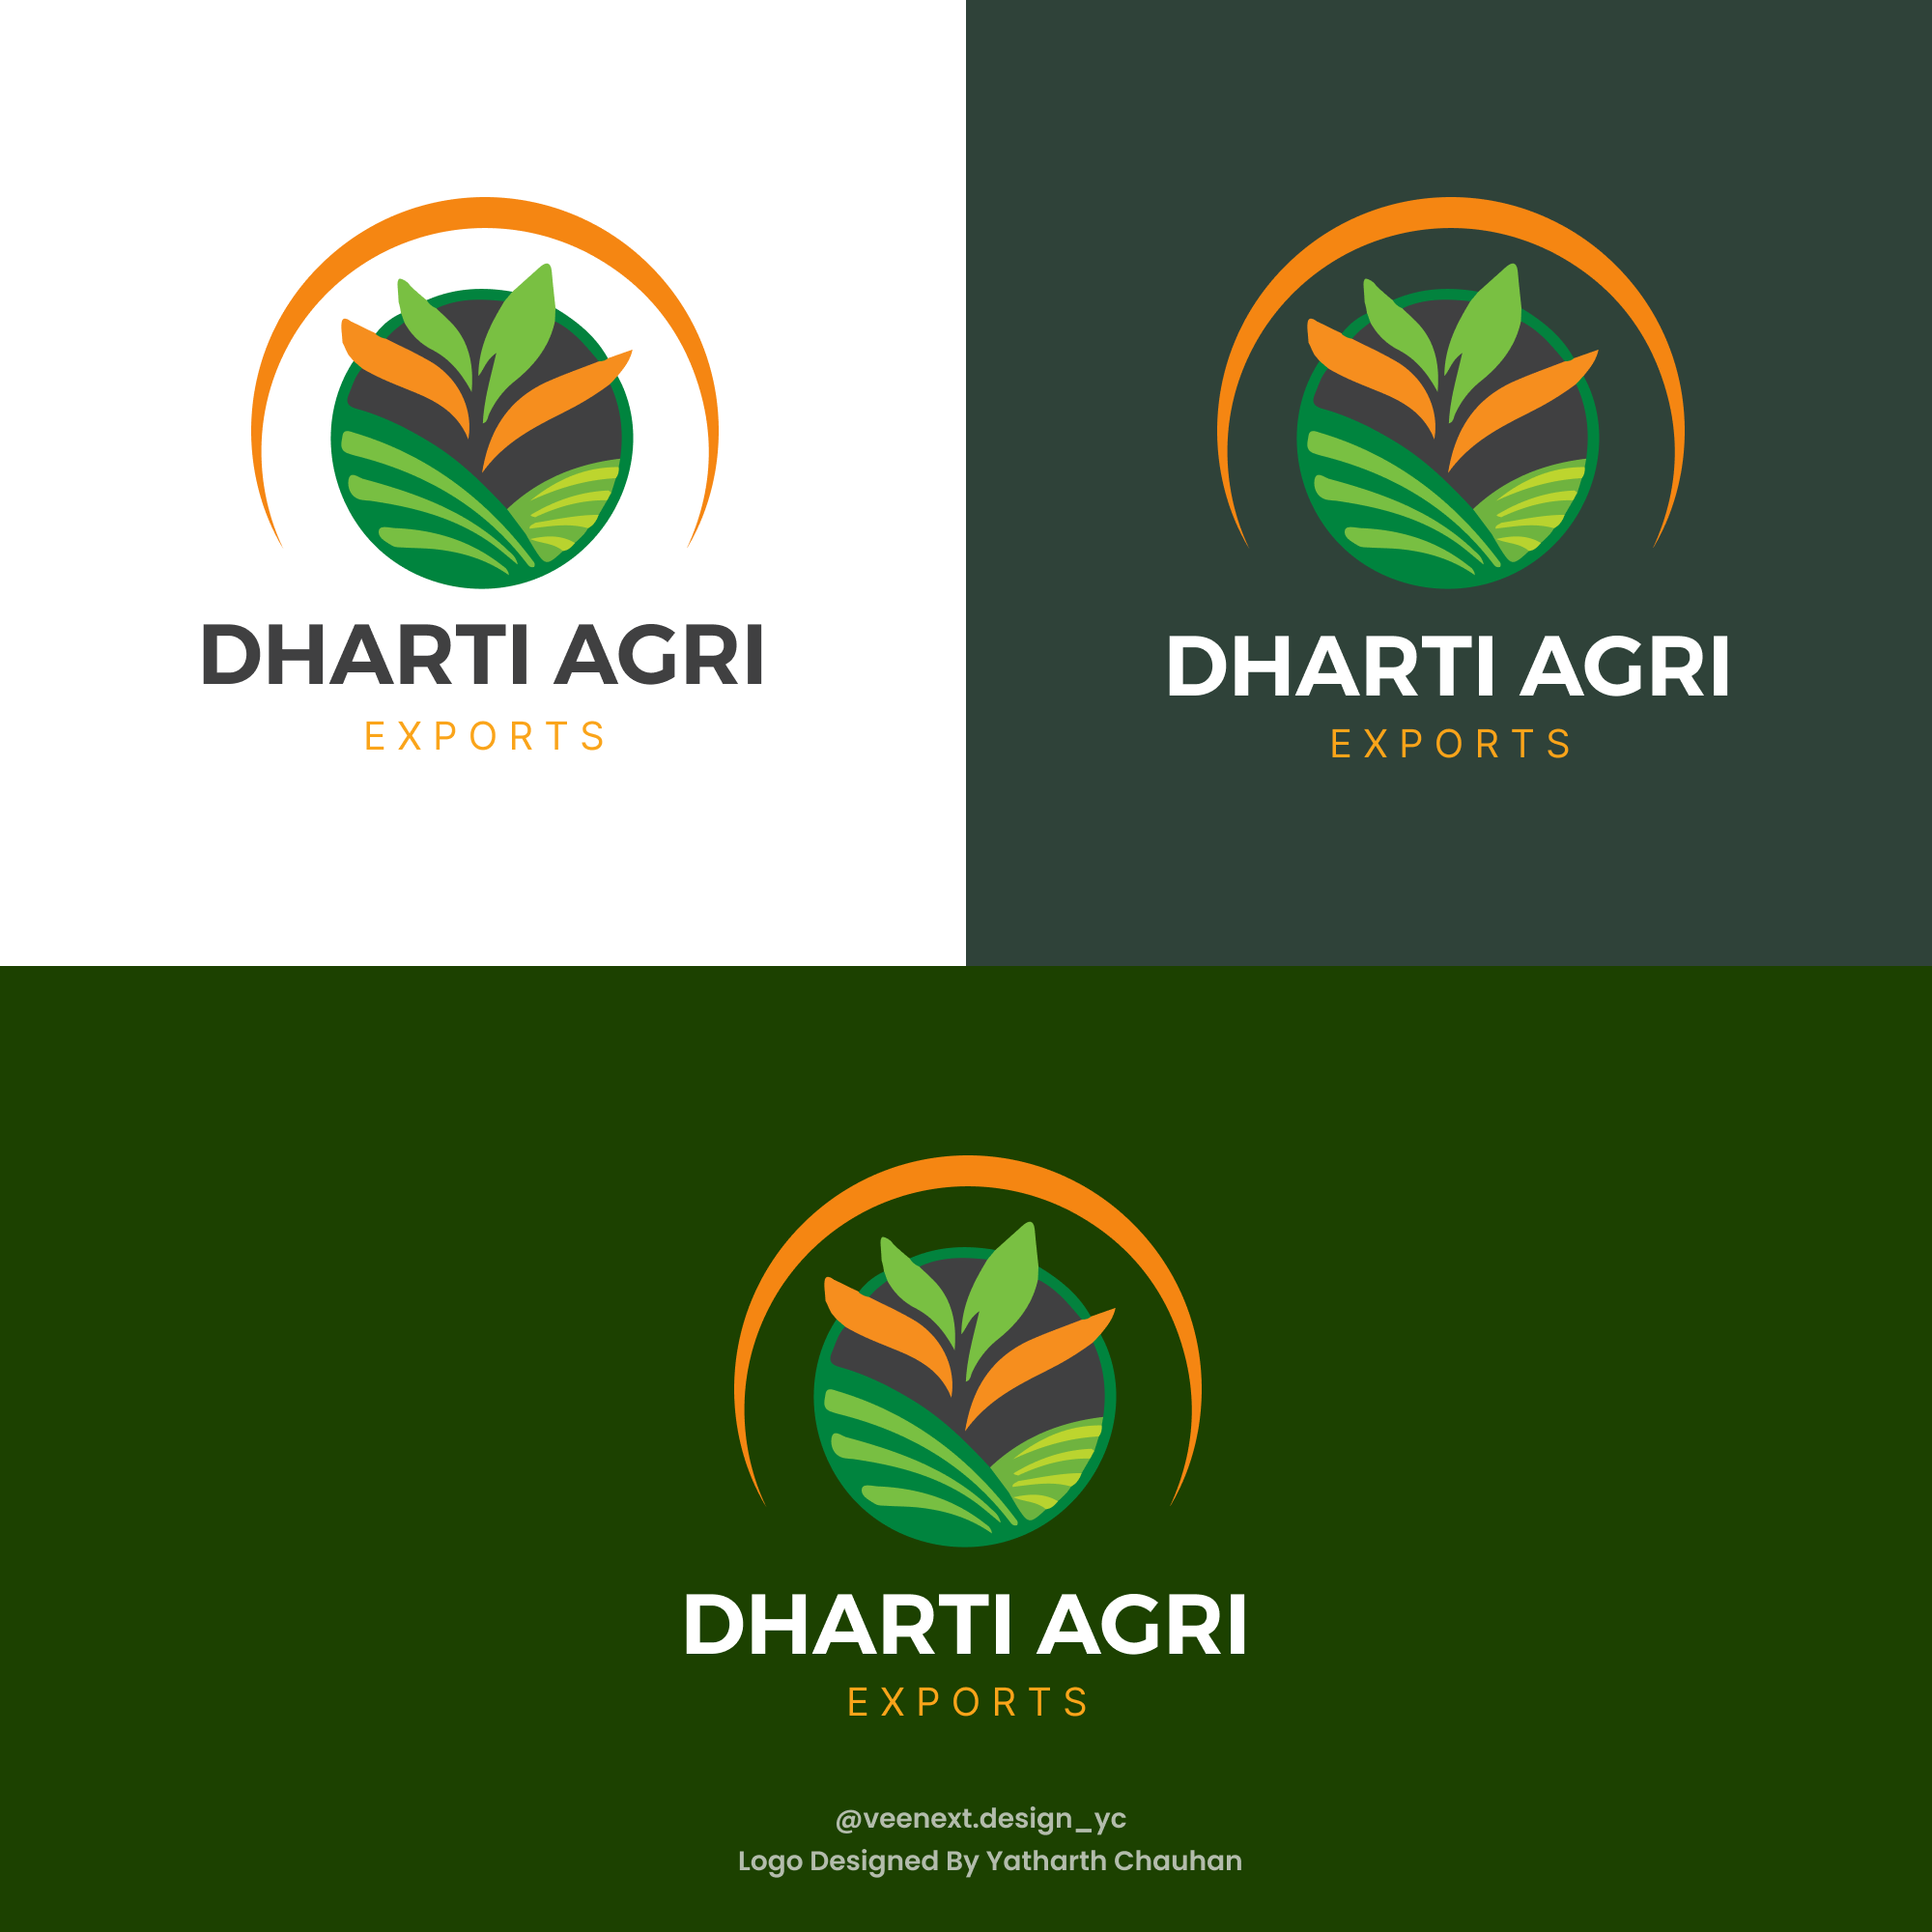 dharti agri exports logo